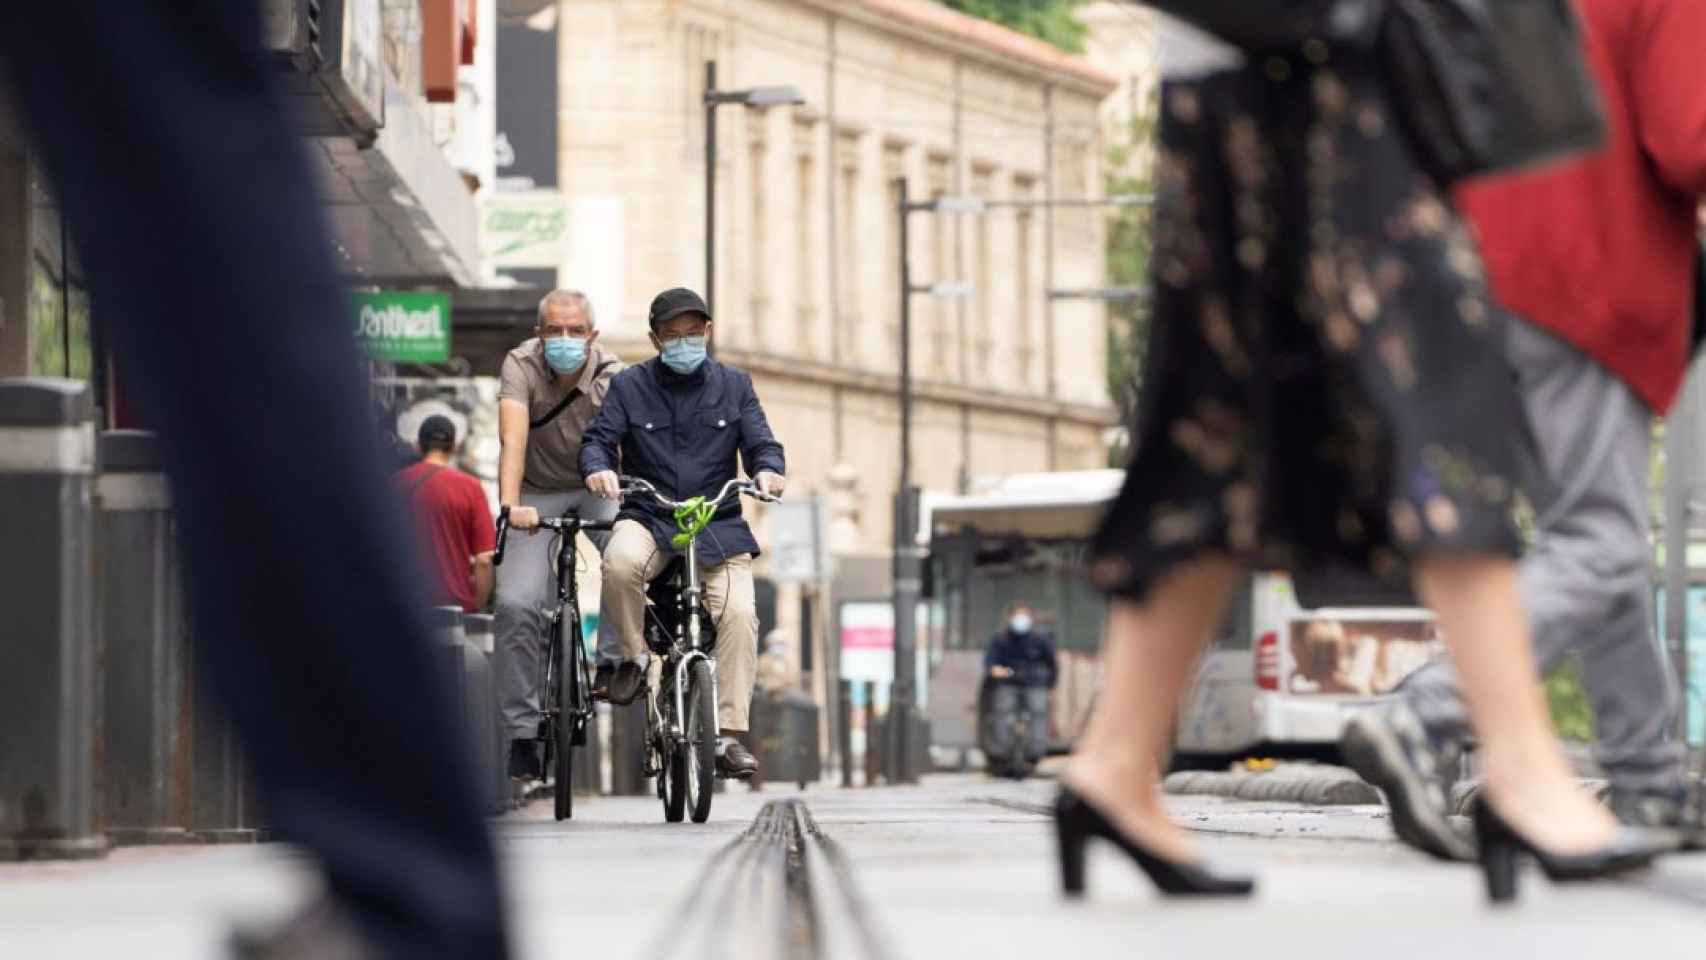 Las bicicletas son habituales en las calles de Vitoria. / Efe